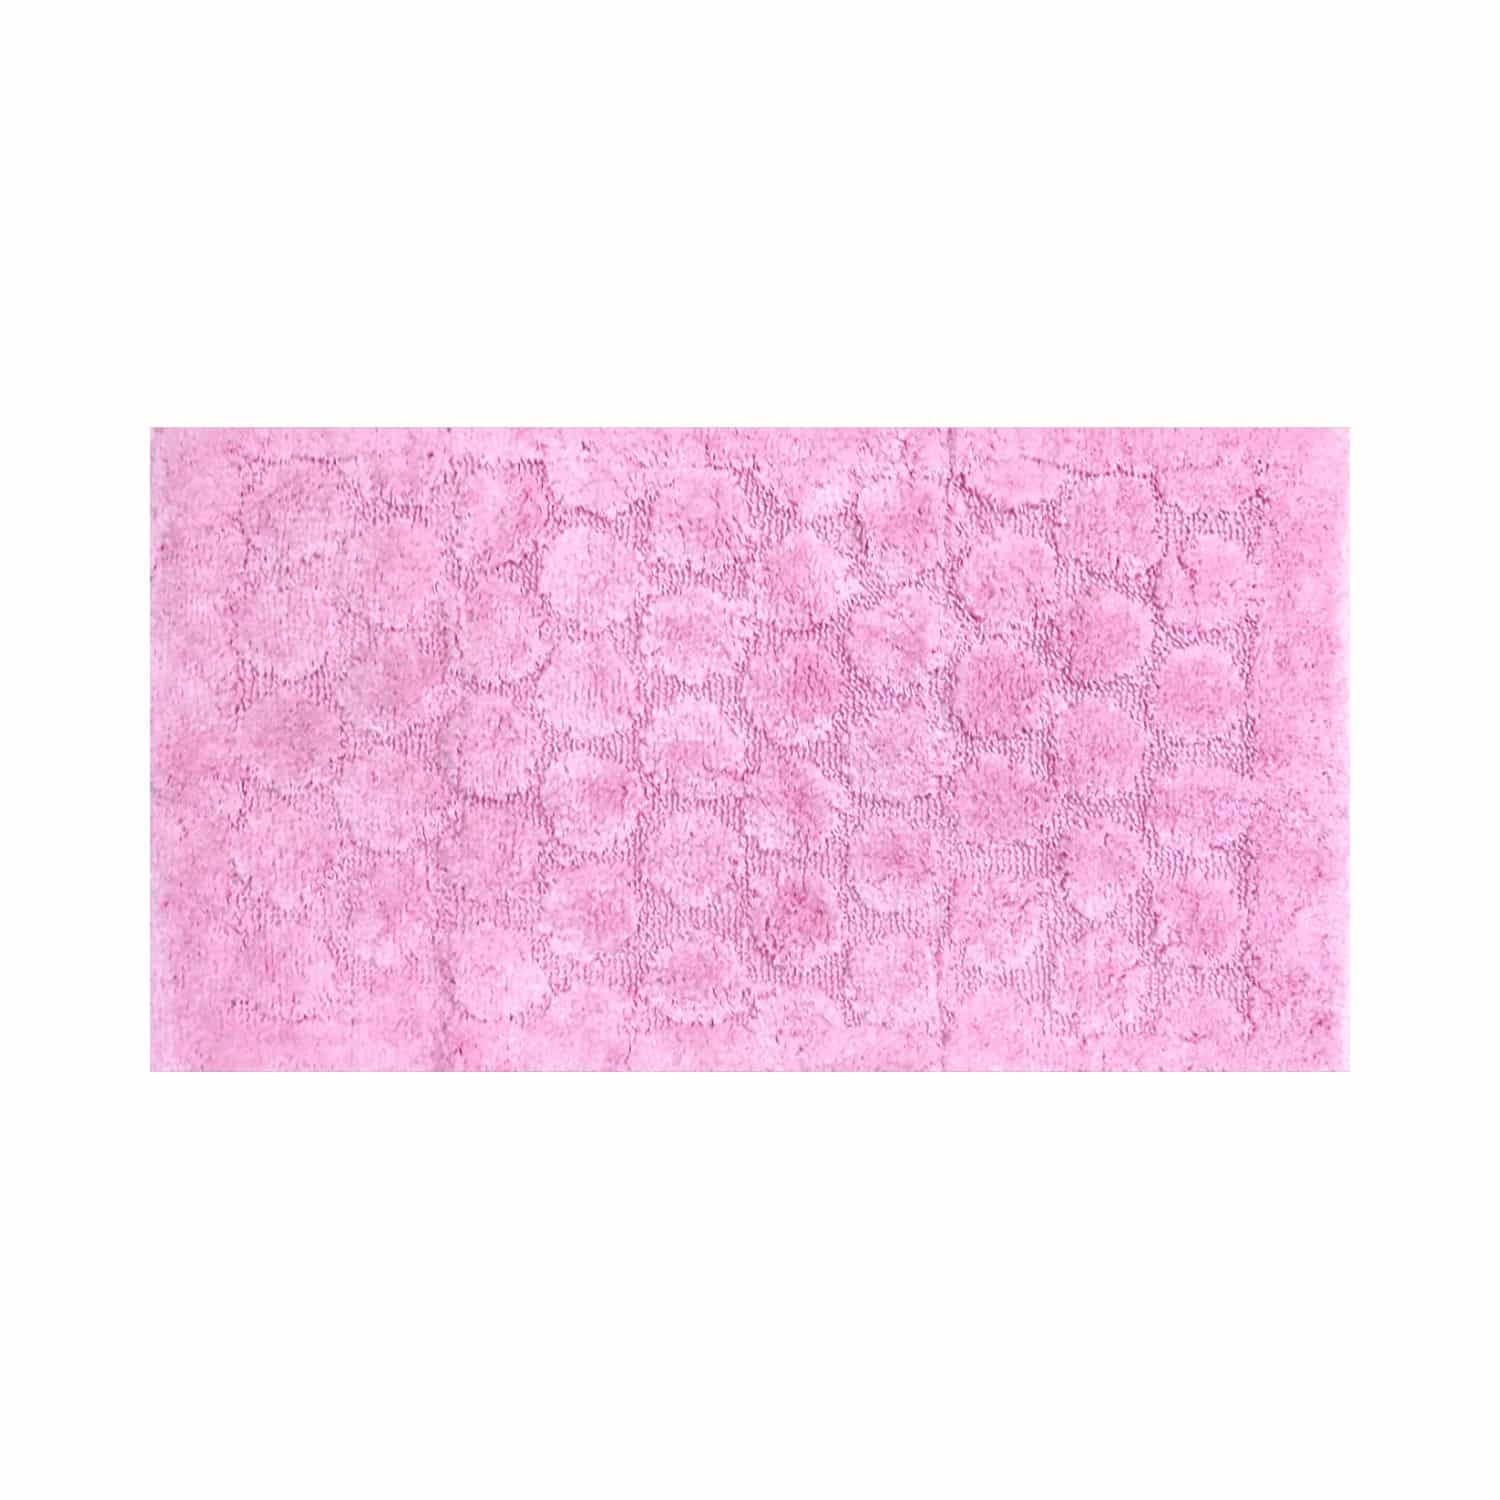 foglia-rosa-set-tappeti-bagno-3-pezzi-cotone-made-in-italy-50-x-90-70-x-140